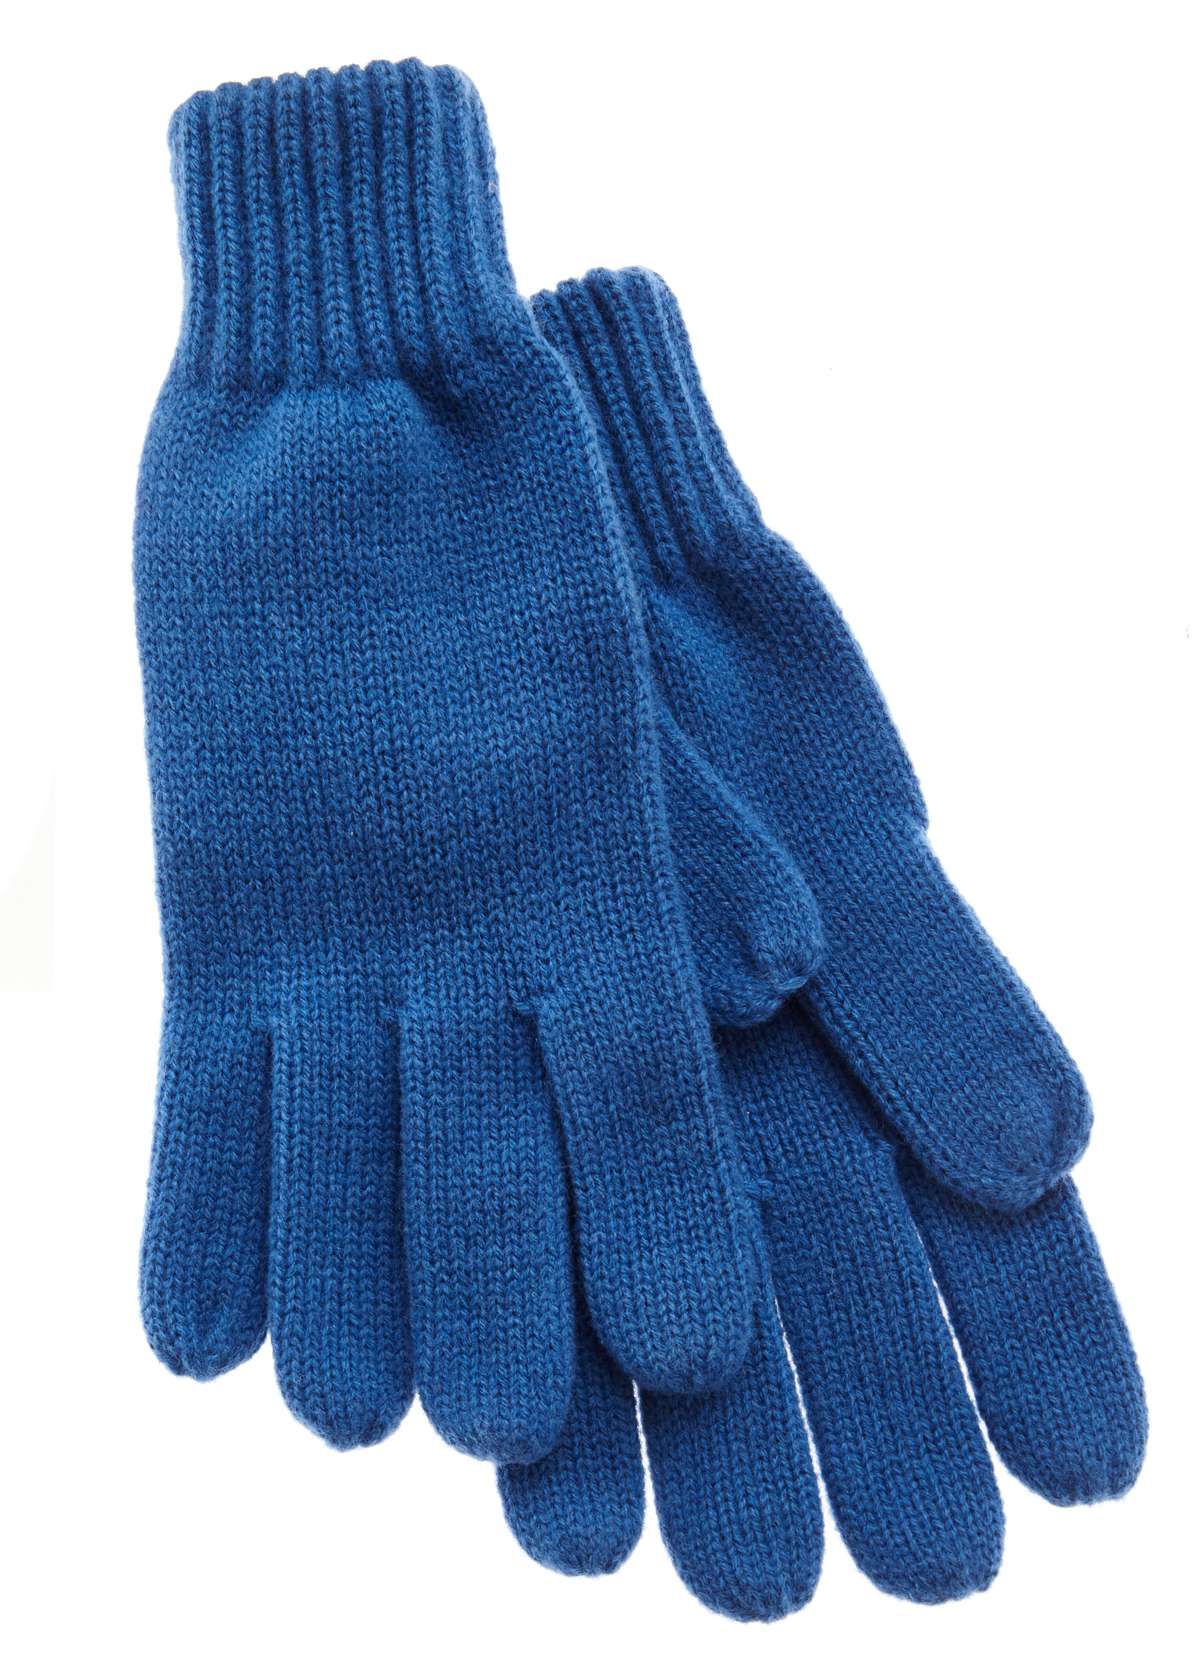 Вязаные перчатки из смесовой шерсти, зимние перчатки, грелки для рук.